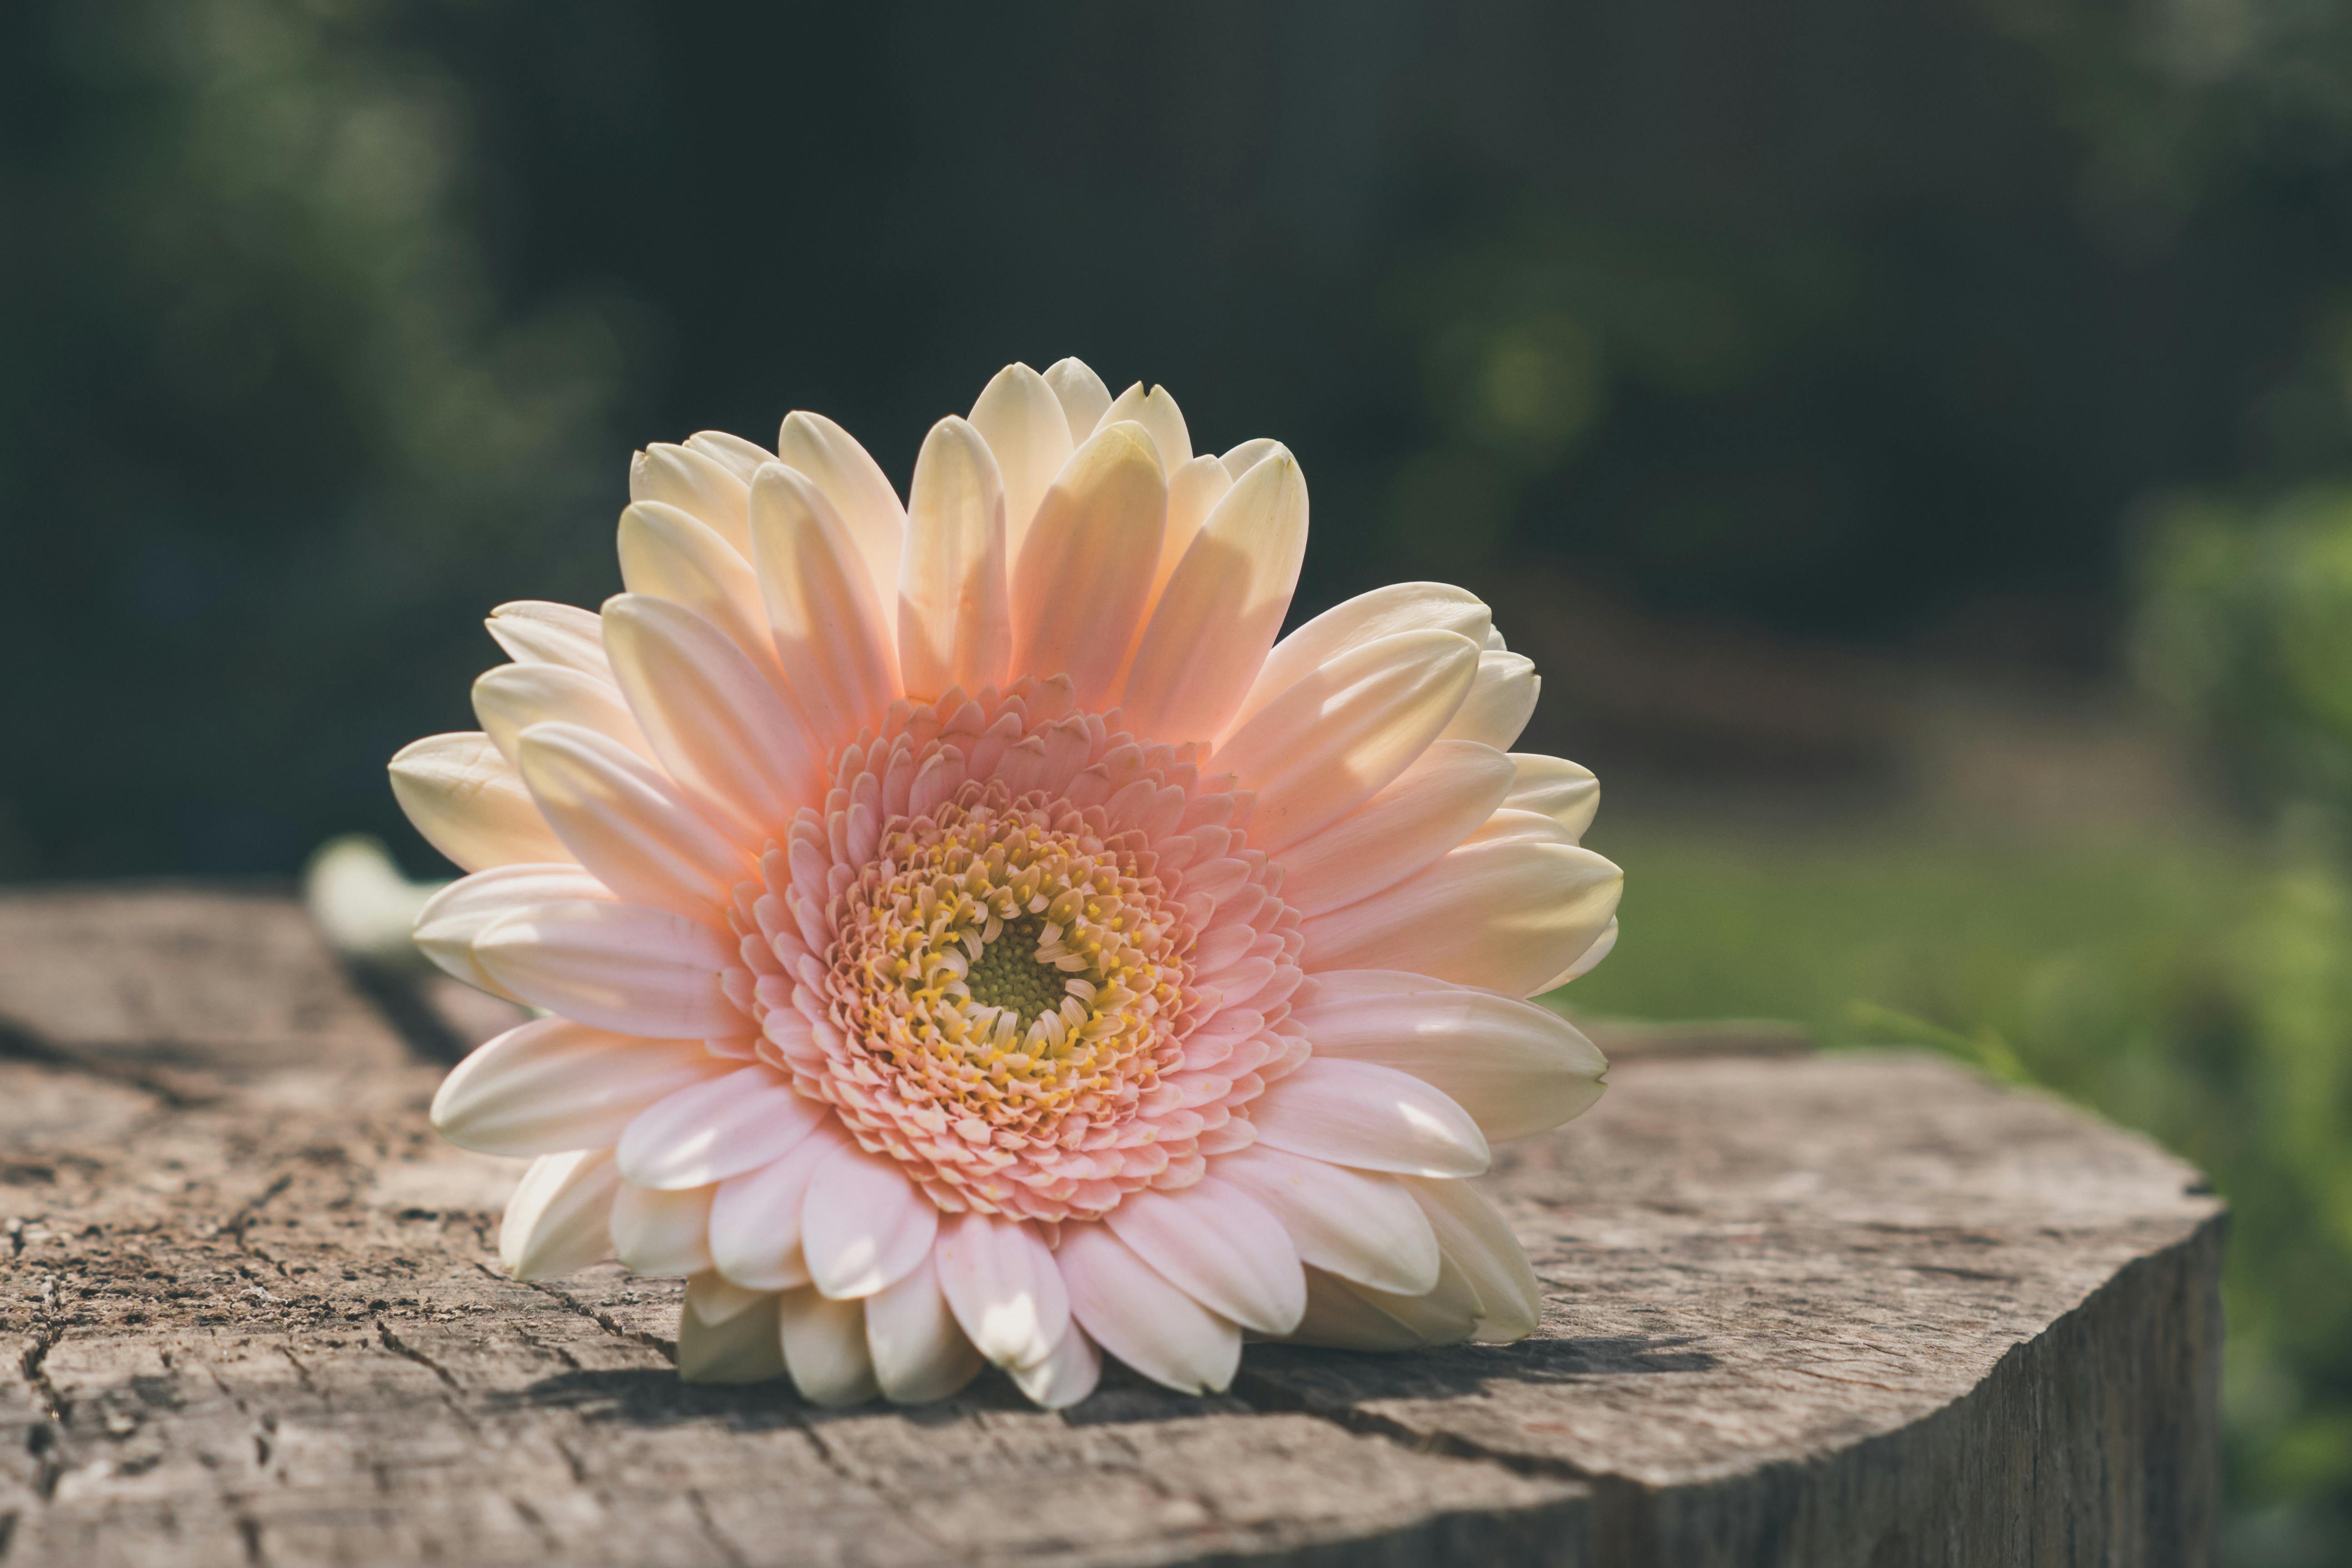 Bạn đang tìm kiếm những hình ảnh hoa đồng tiền miễn phí để tải xuống? Hãy truy cập ngay vào trang web của chúng tôi và khám phá hàng trăm tấm ảnh đầy màu sắc của loài hoa đẹp này.